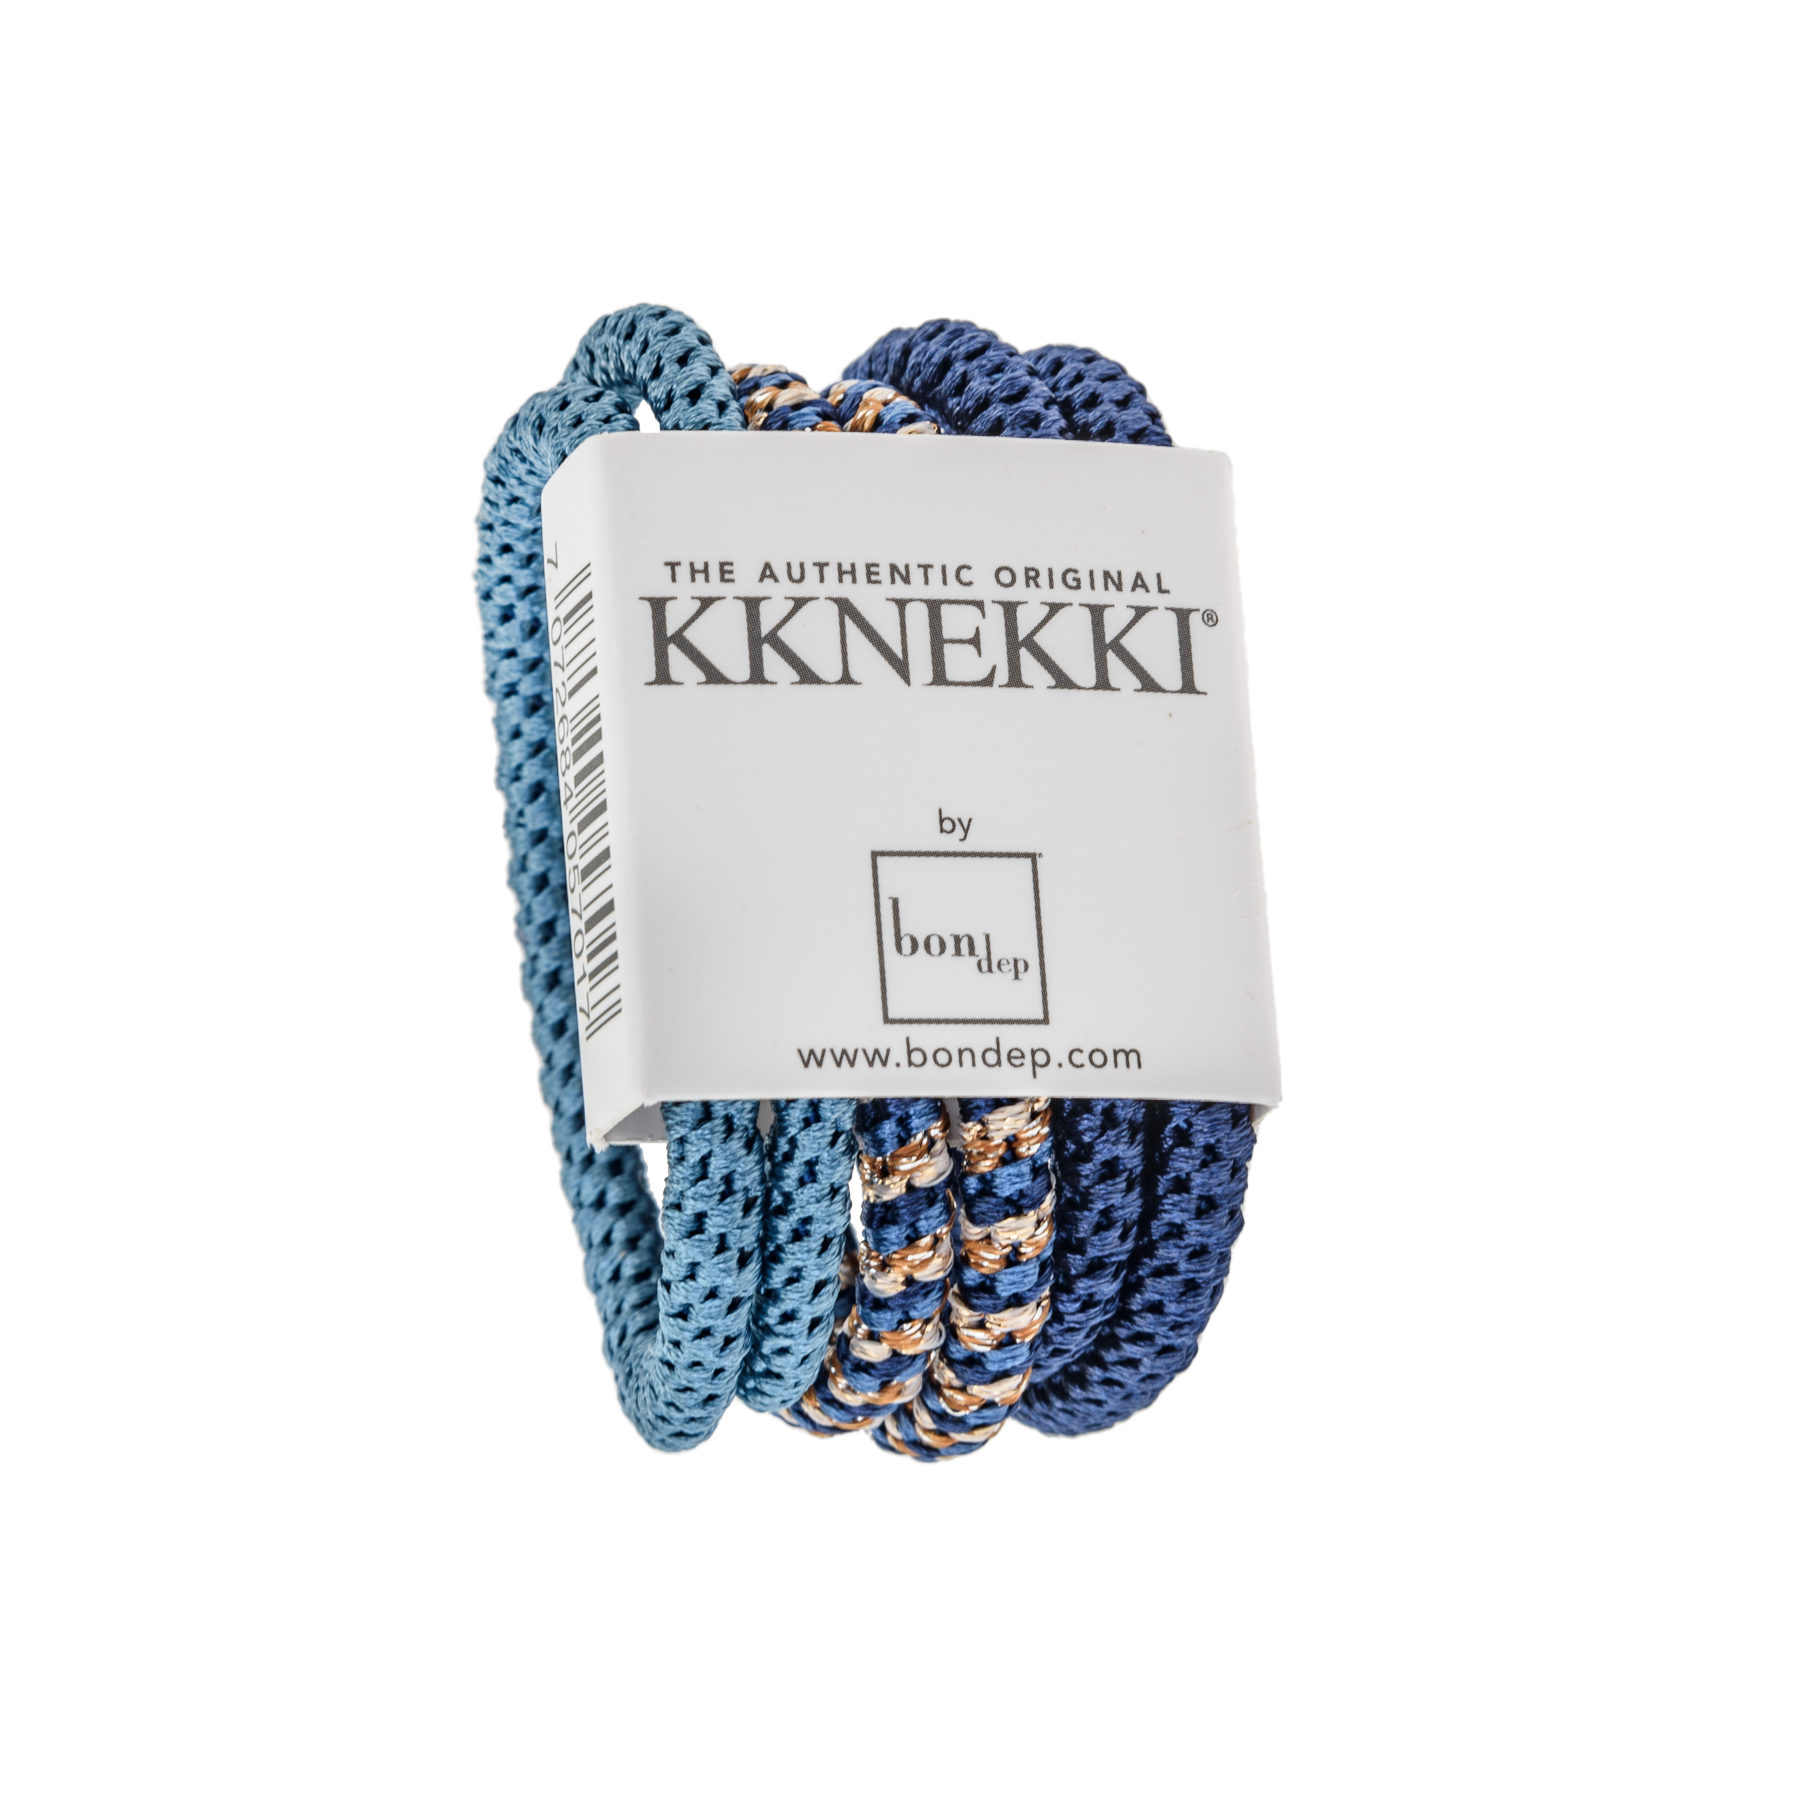 Set Of 6 Shades Of Blue Slim Kknekki Hair Ties